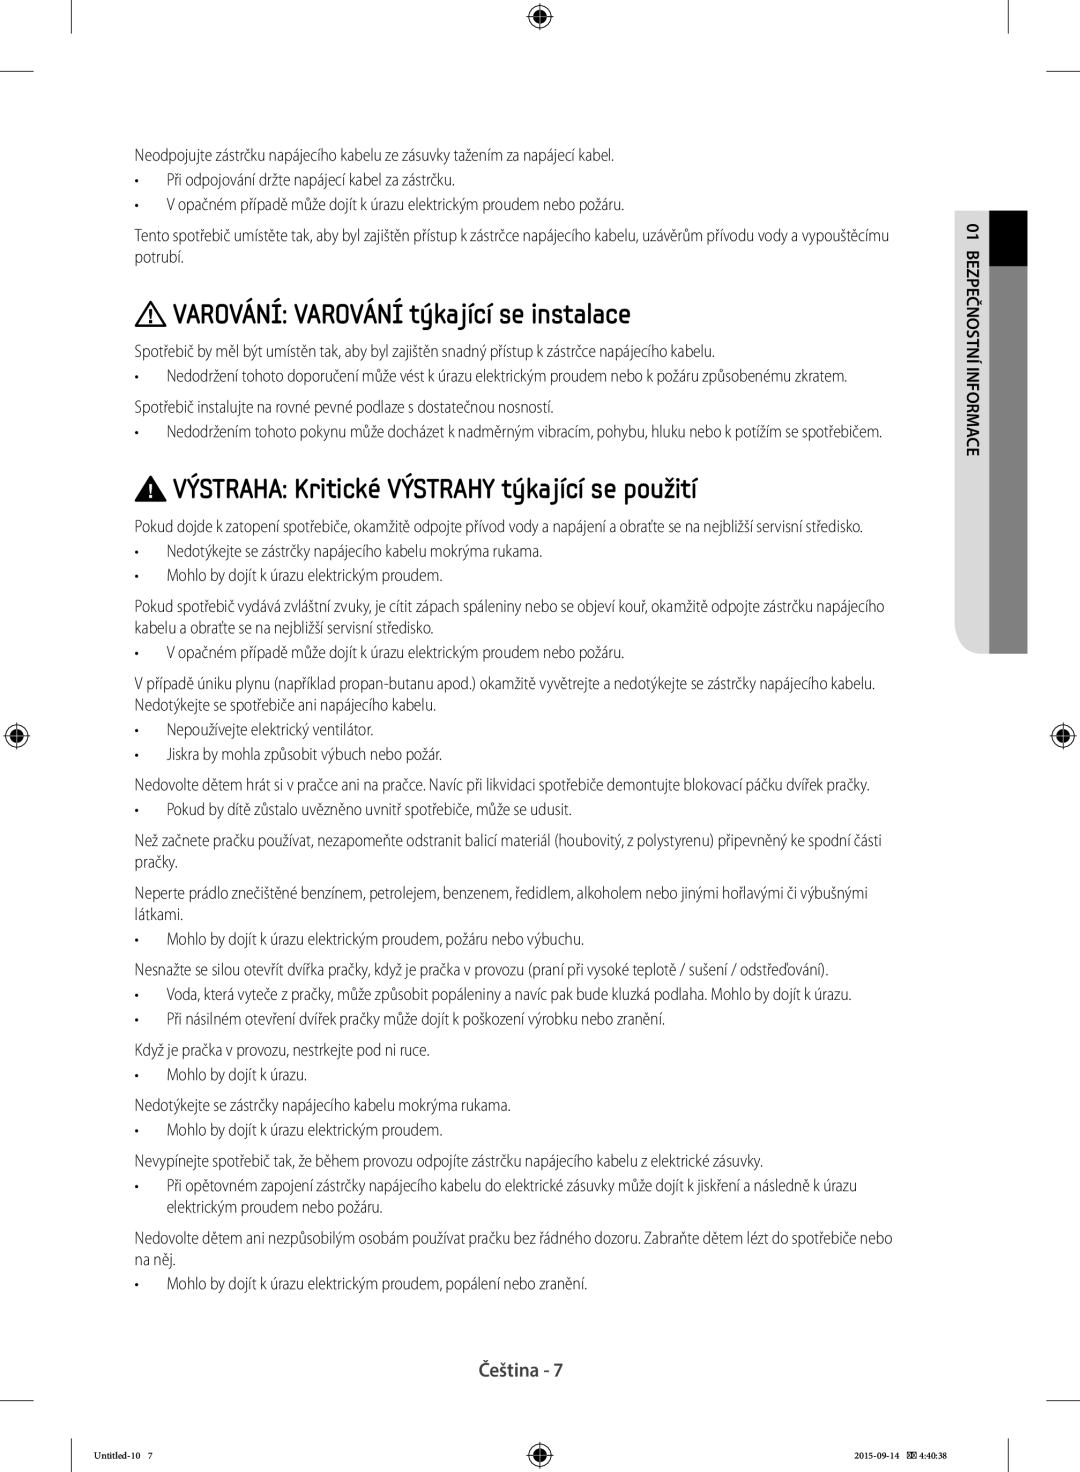 Samsung WF70F5E2W2W/LE VAROVÁNÍ VAROVÁNÍ týkající se instalace, VÝSTRAHA Kritické VÝSTRAHY týkající se použití, Čeština 